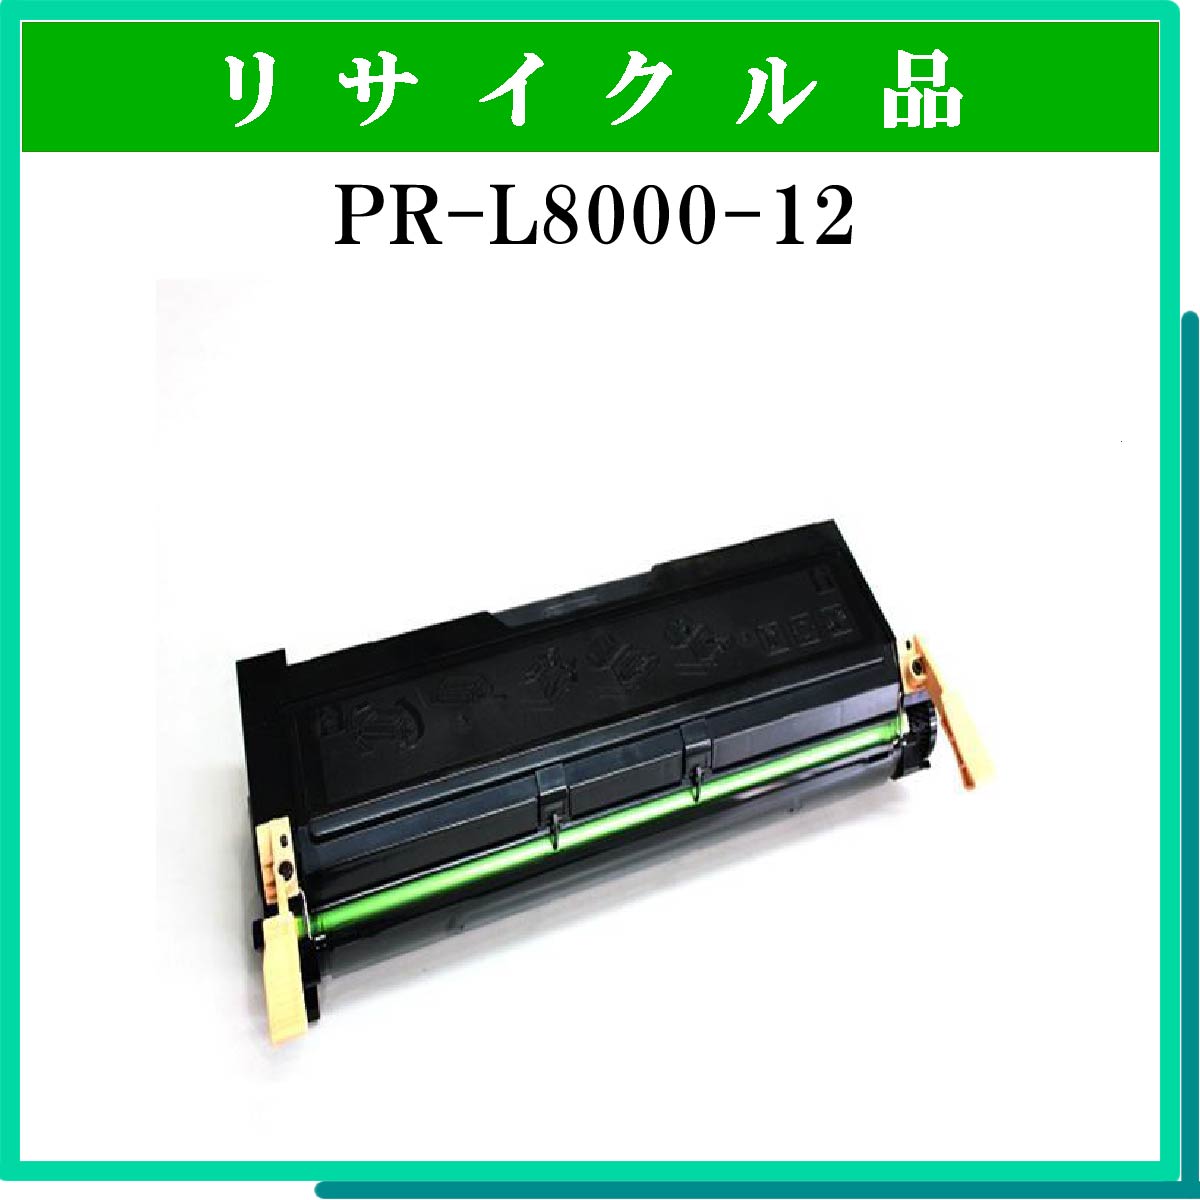 PR-L8000-12